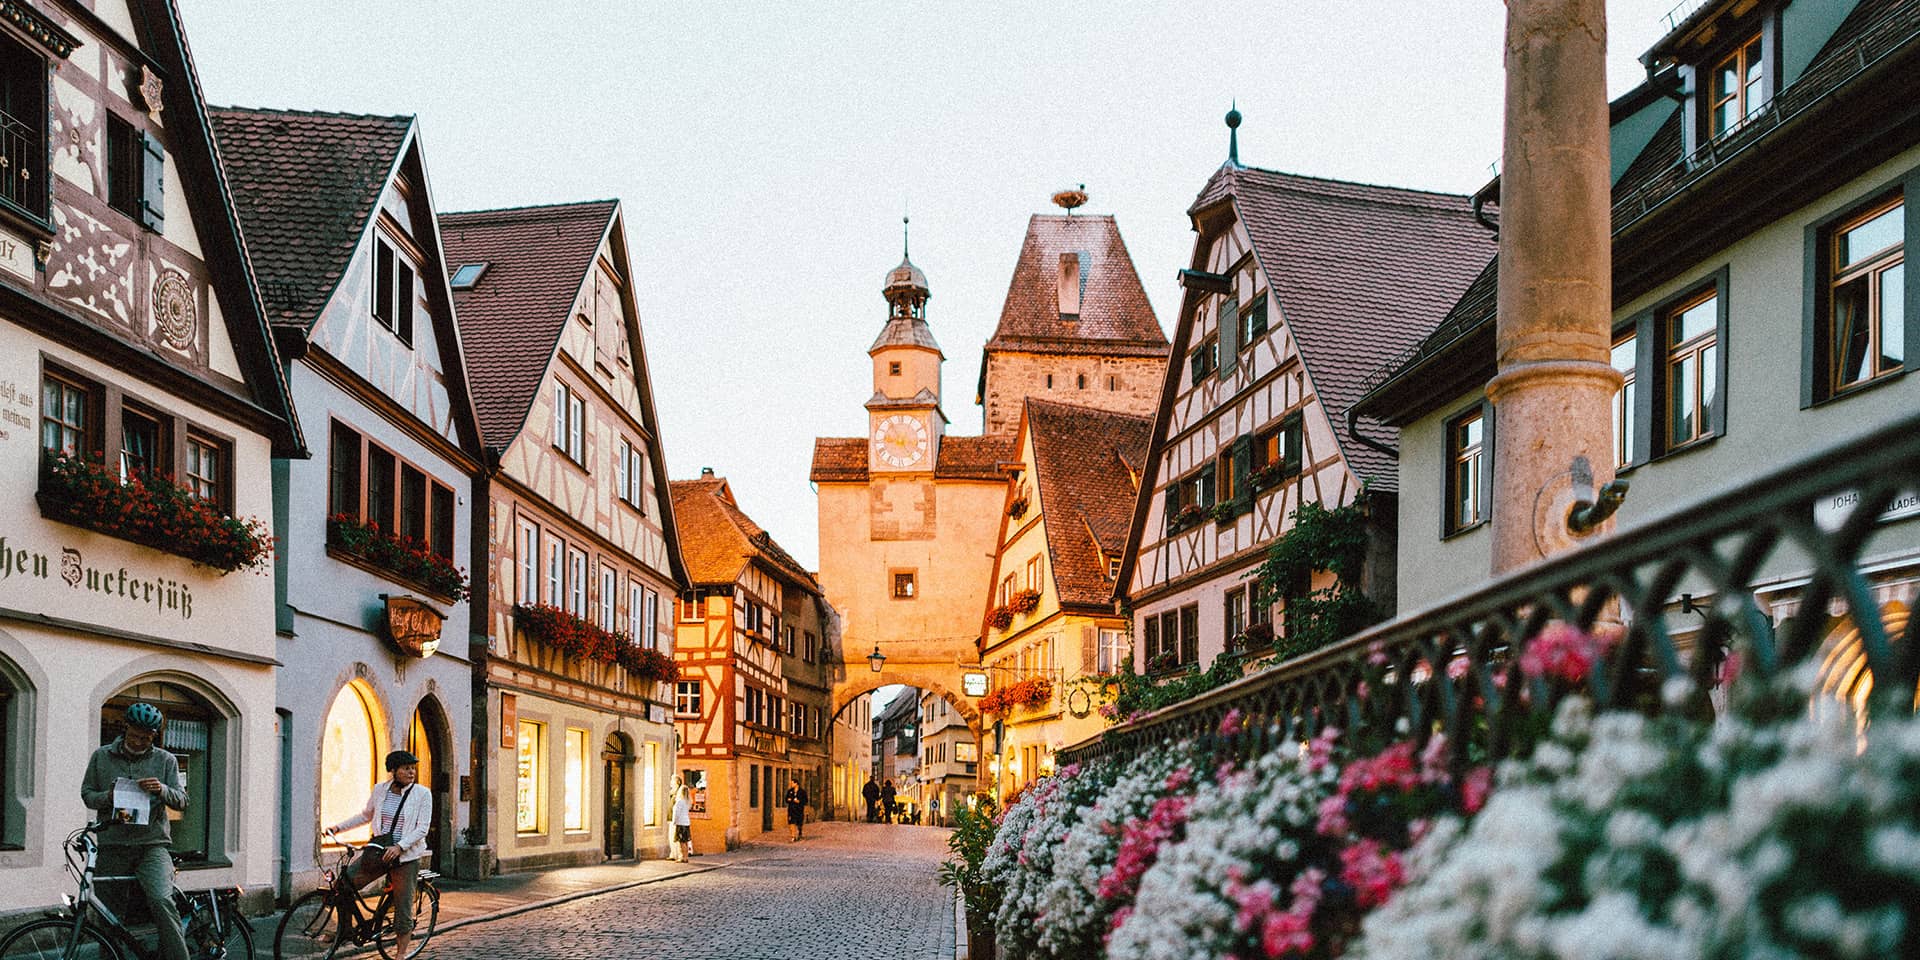 Billede af en mindre tysk by